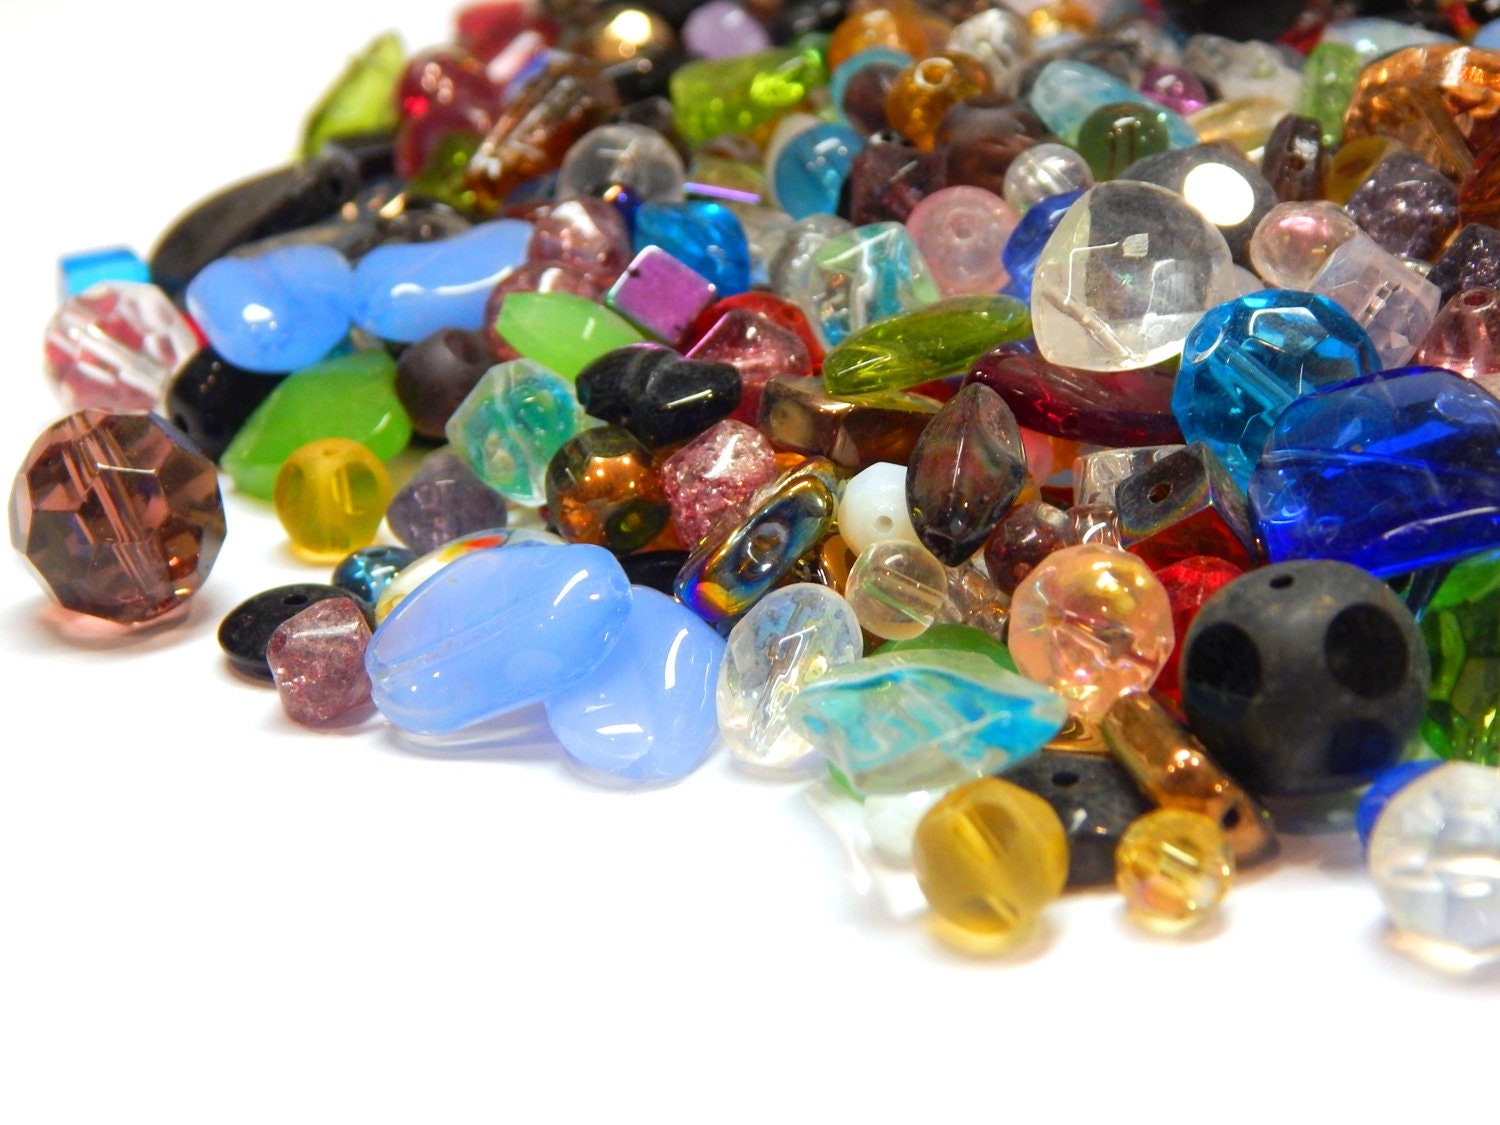 Polka Dot Glass Beads Mix Round Multi Beads for Bracelet Making Bulk 10 lbs